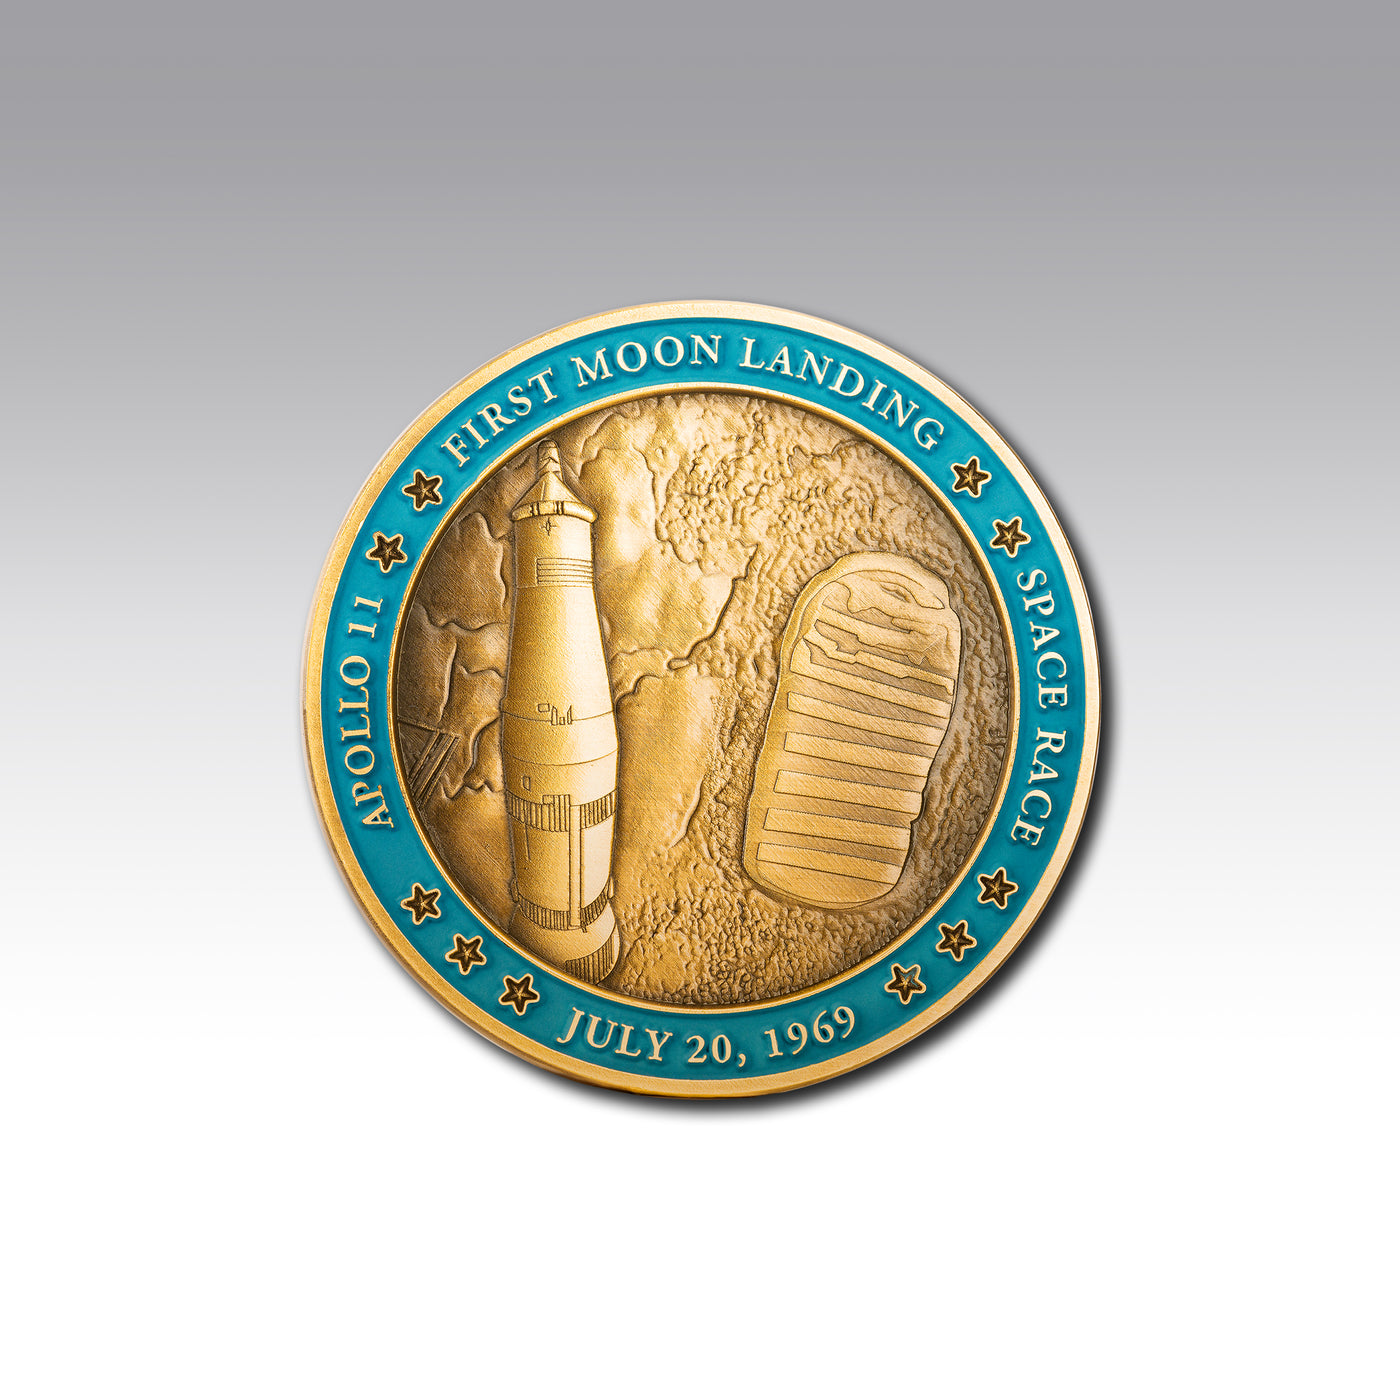 Apollo 11 Moon Landing Commemorative Coin